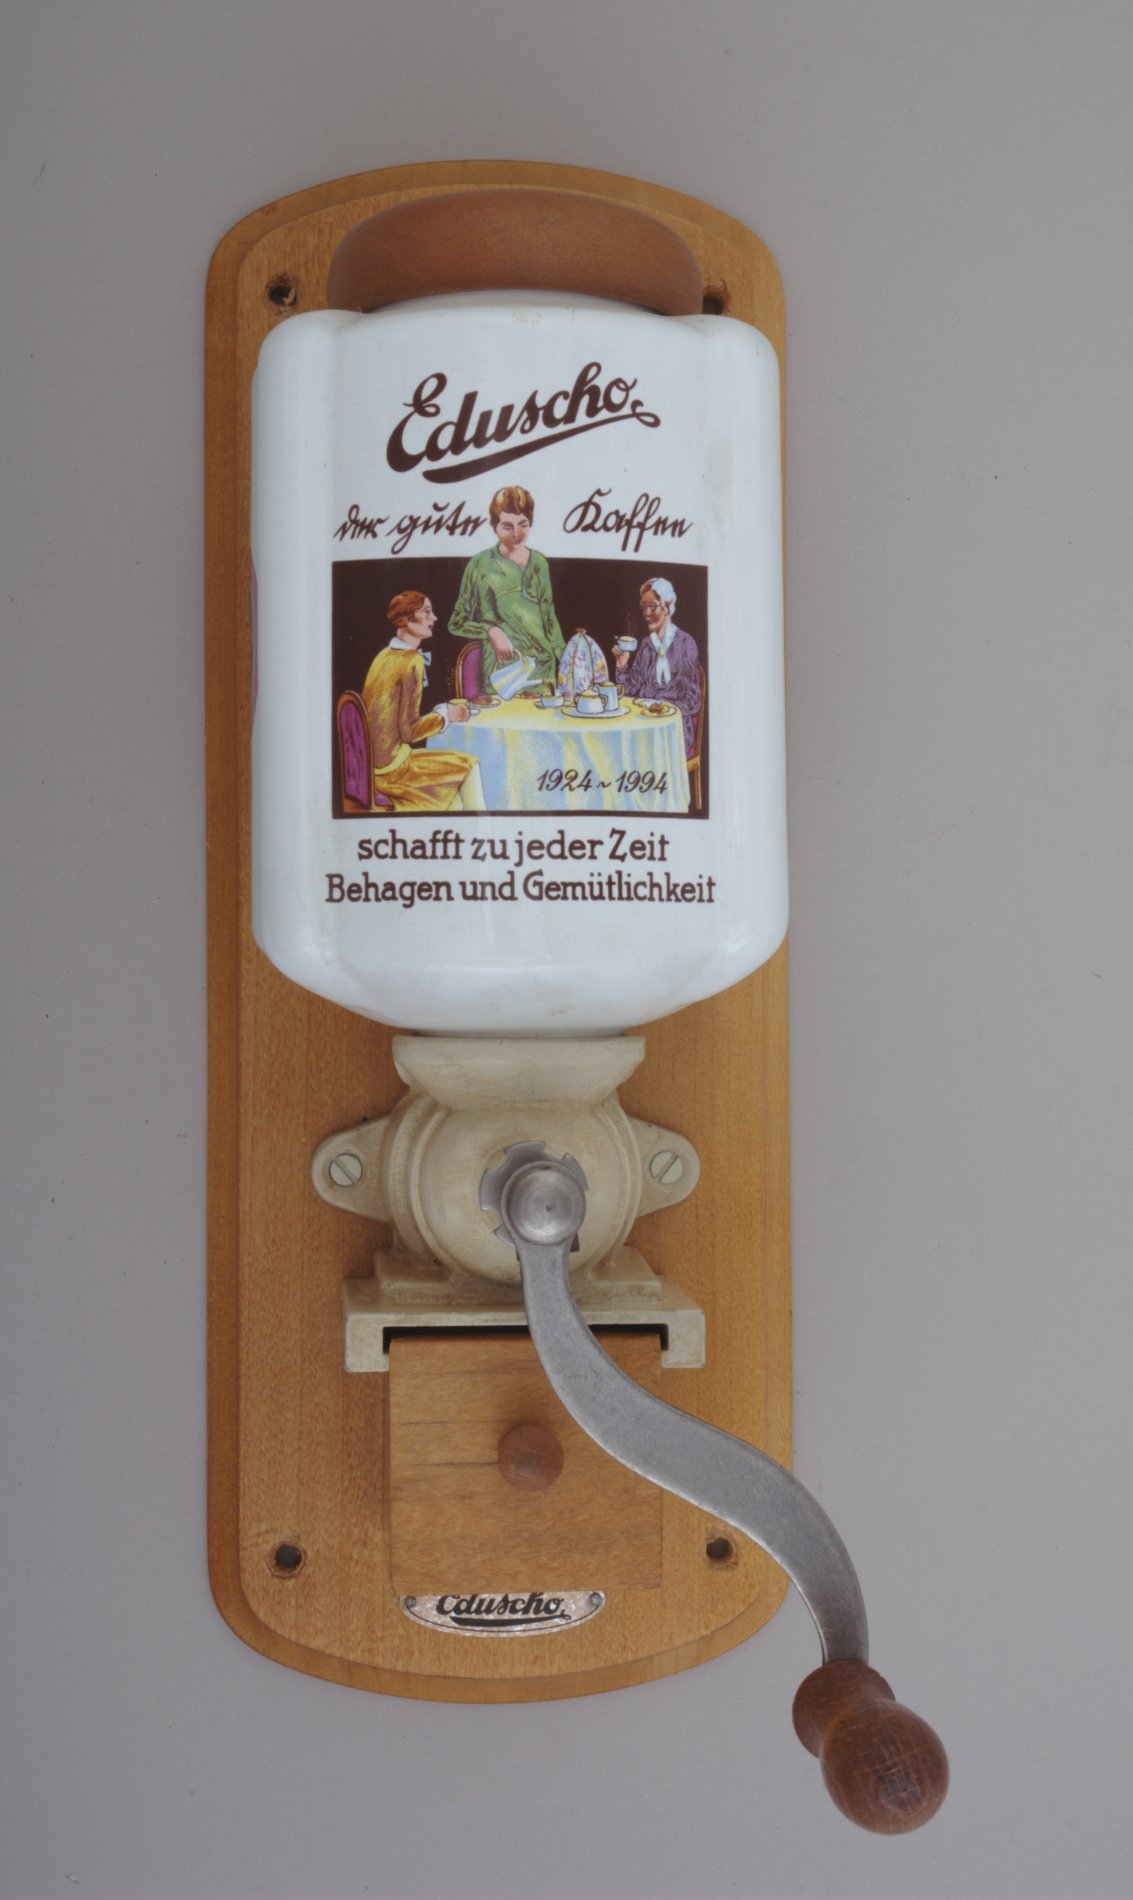 Hand-Kaffee-Mühlevon "Eduscho" (Stiftung Domäne Dahlem - Landgut und Museum, Weiternutzung nur mit Genehmigung des Museums CC BY-NC-SA)